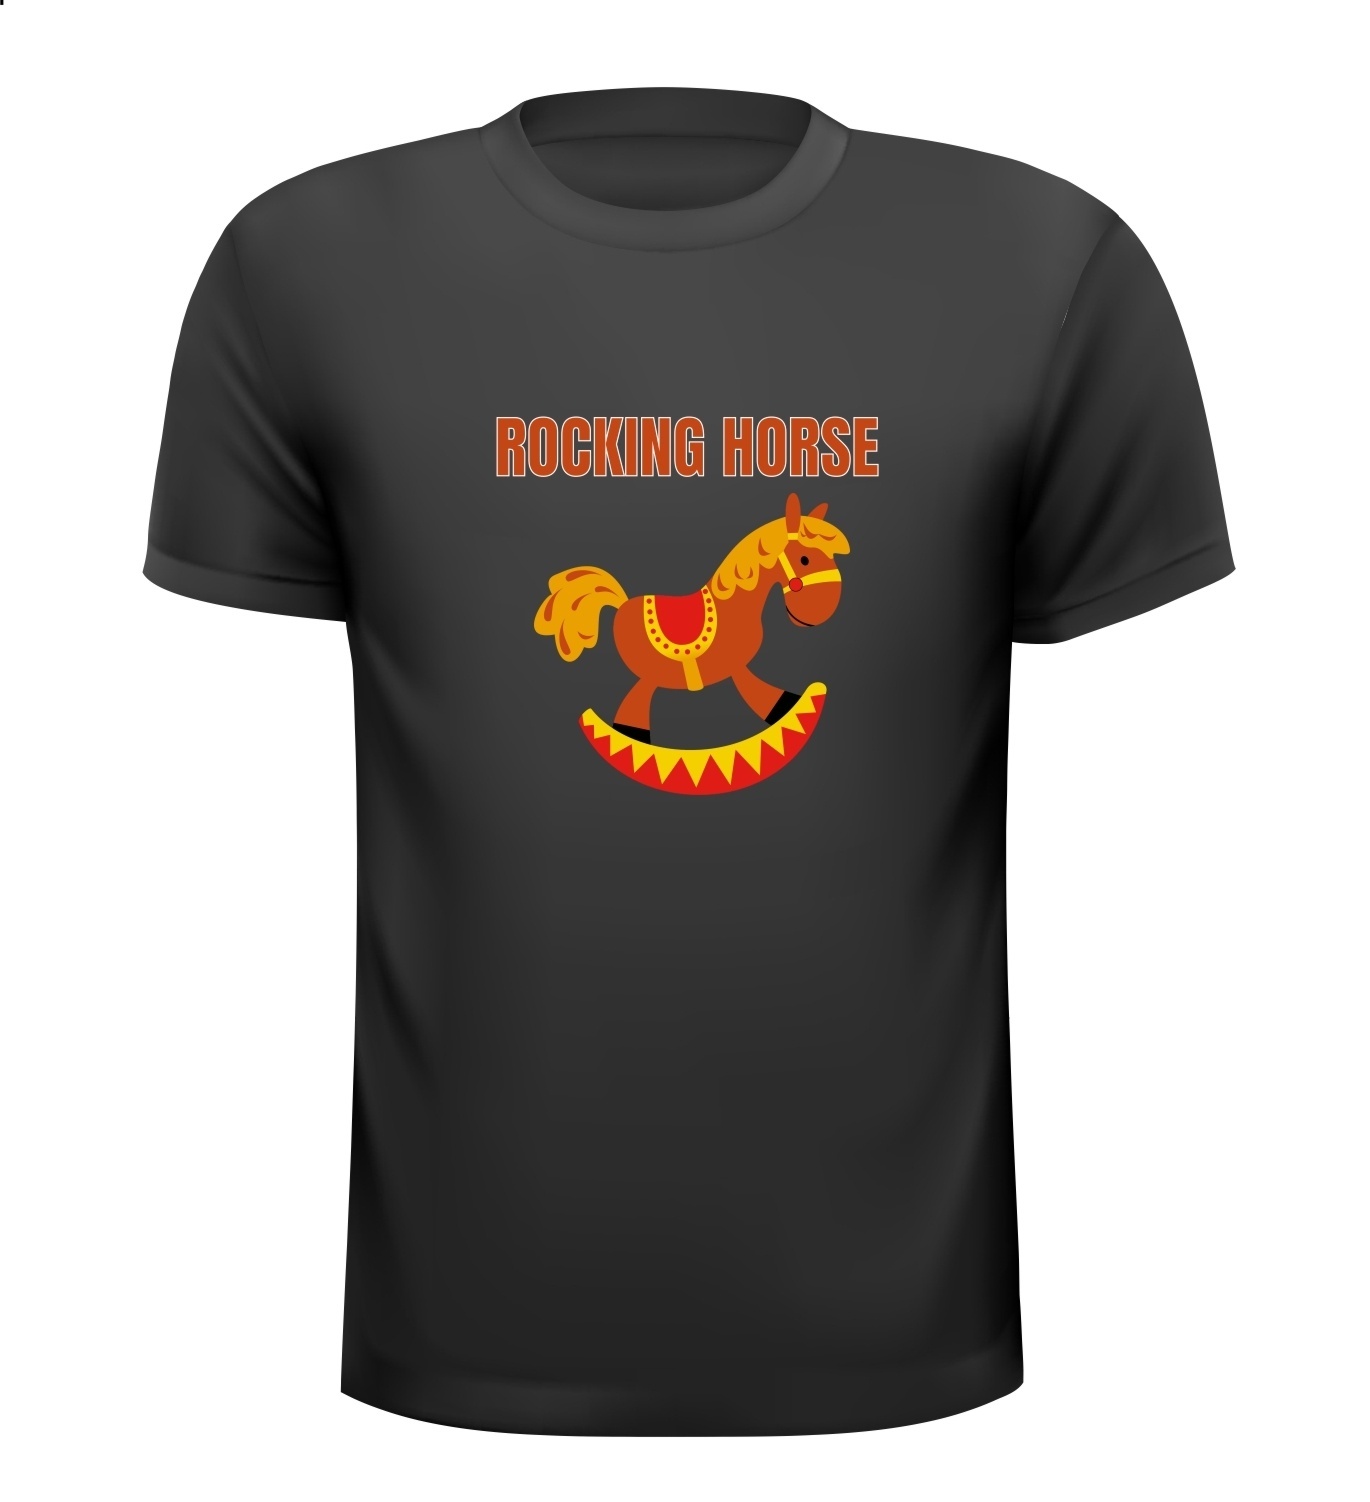 Rocking horse T-shirt grappig hobbelpaard 